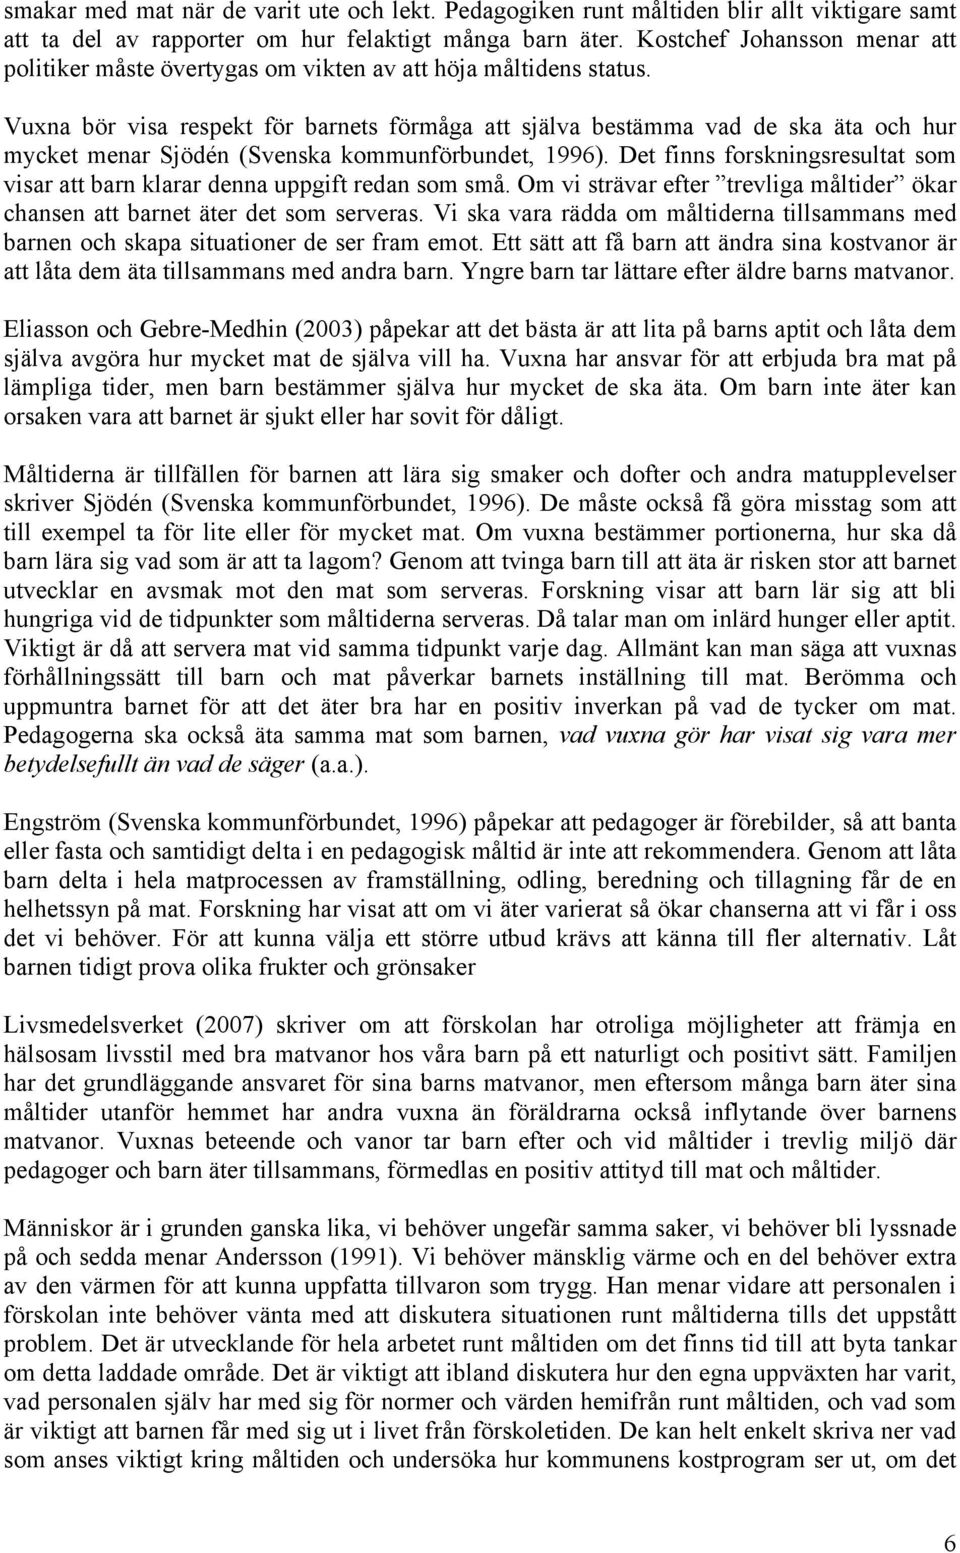 Vuxna bör visa respekt för barnets förmåga att själva bestämma vad de ska äta och hur mycket menar Sjödén (Svenska kommunförbundet, 1996).